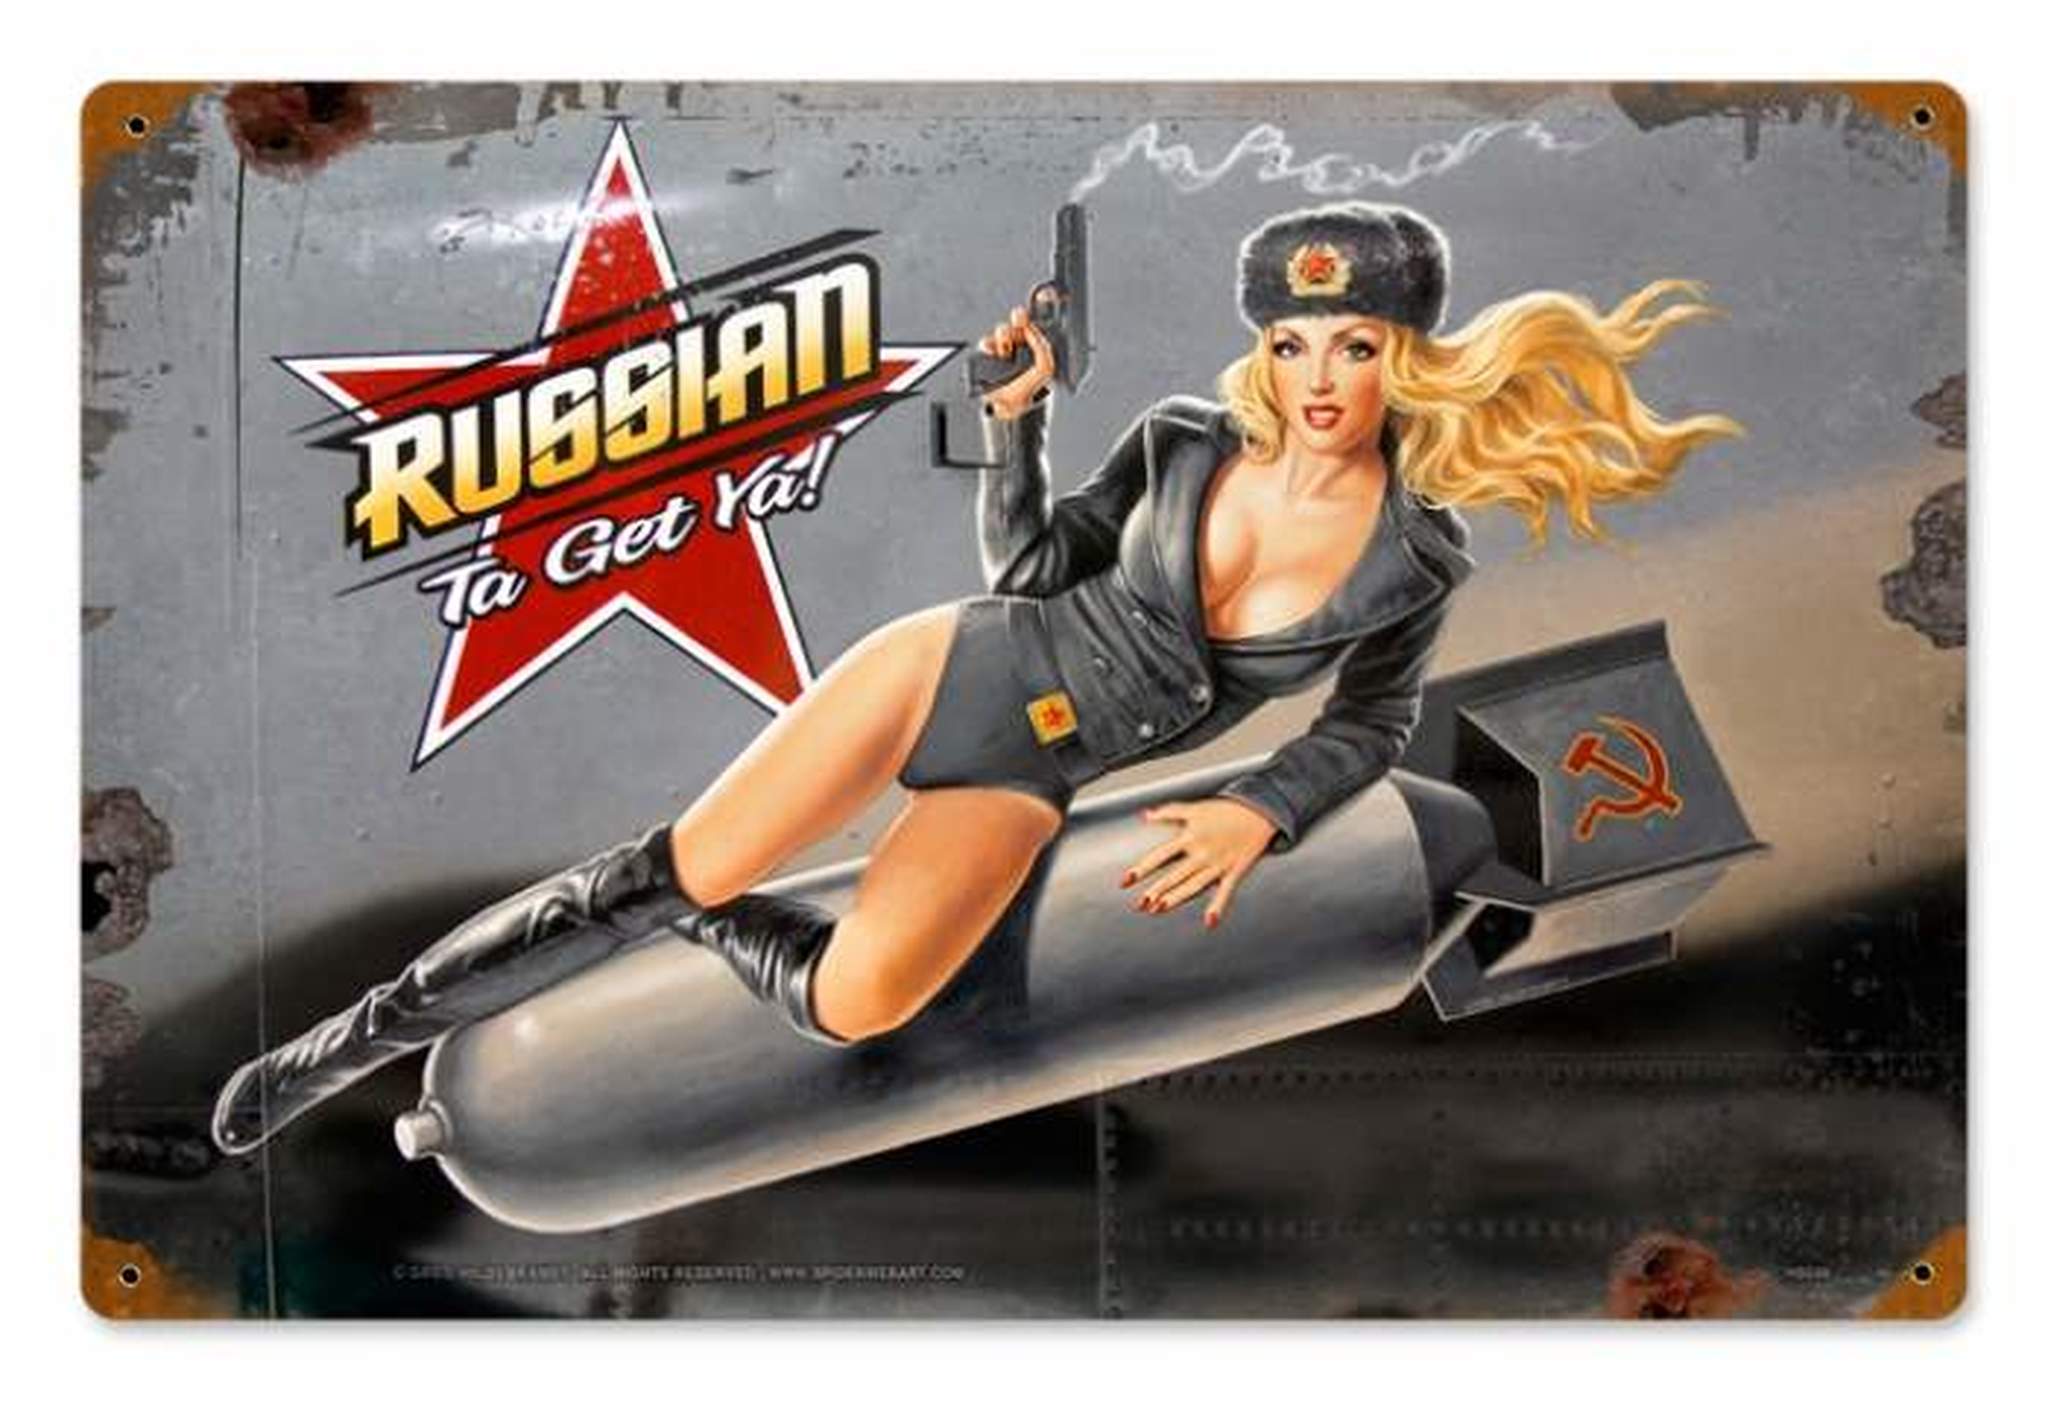 Russian Pin Up Girl - HD Wallpaper 